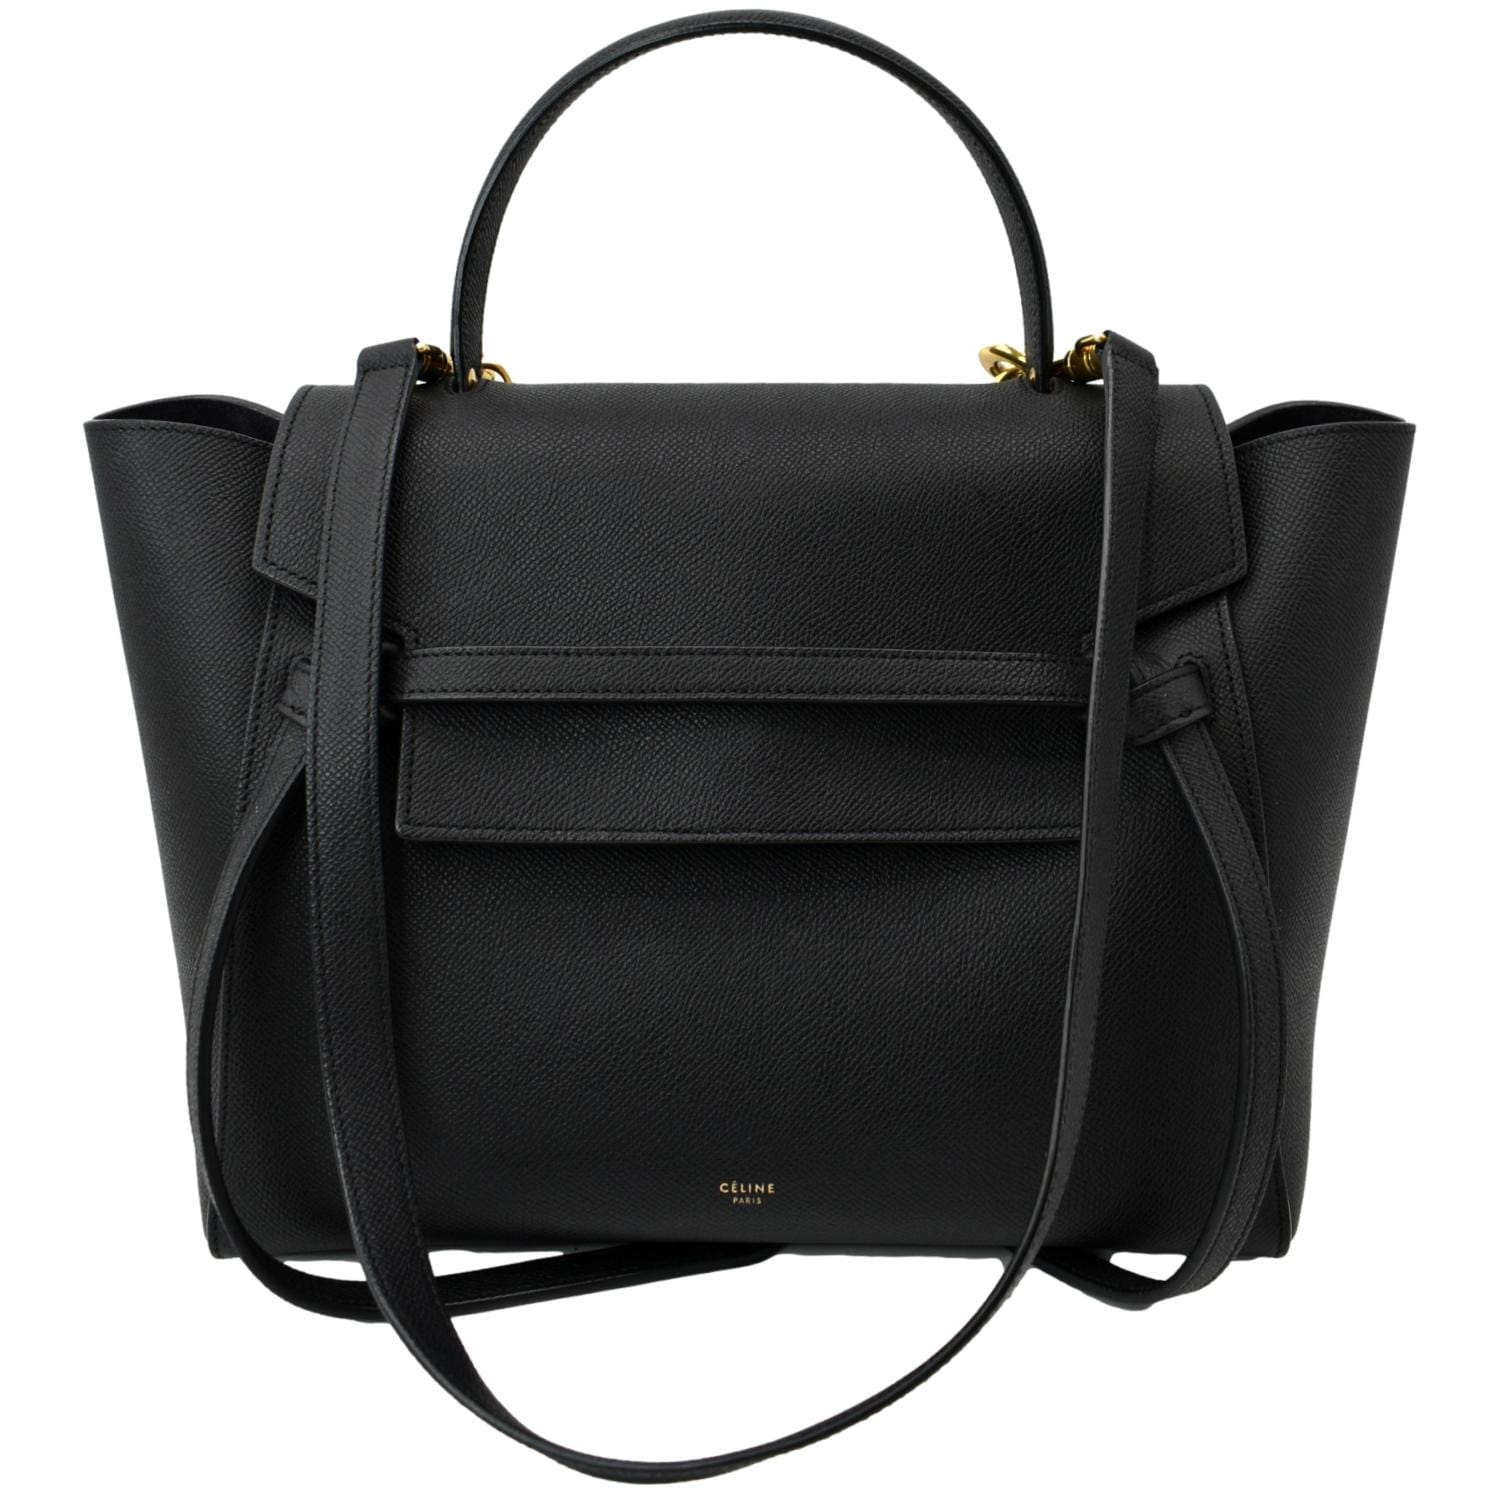 CELINE Belt bag MINI Black leather Women's Shoulder & Hand carry  Authentic